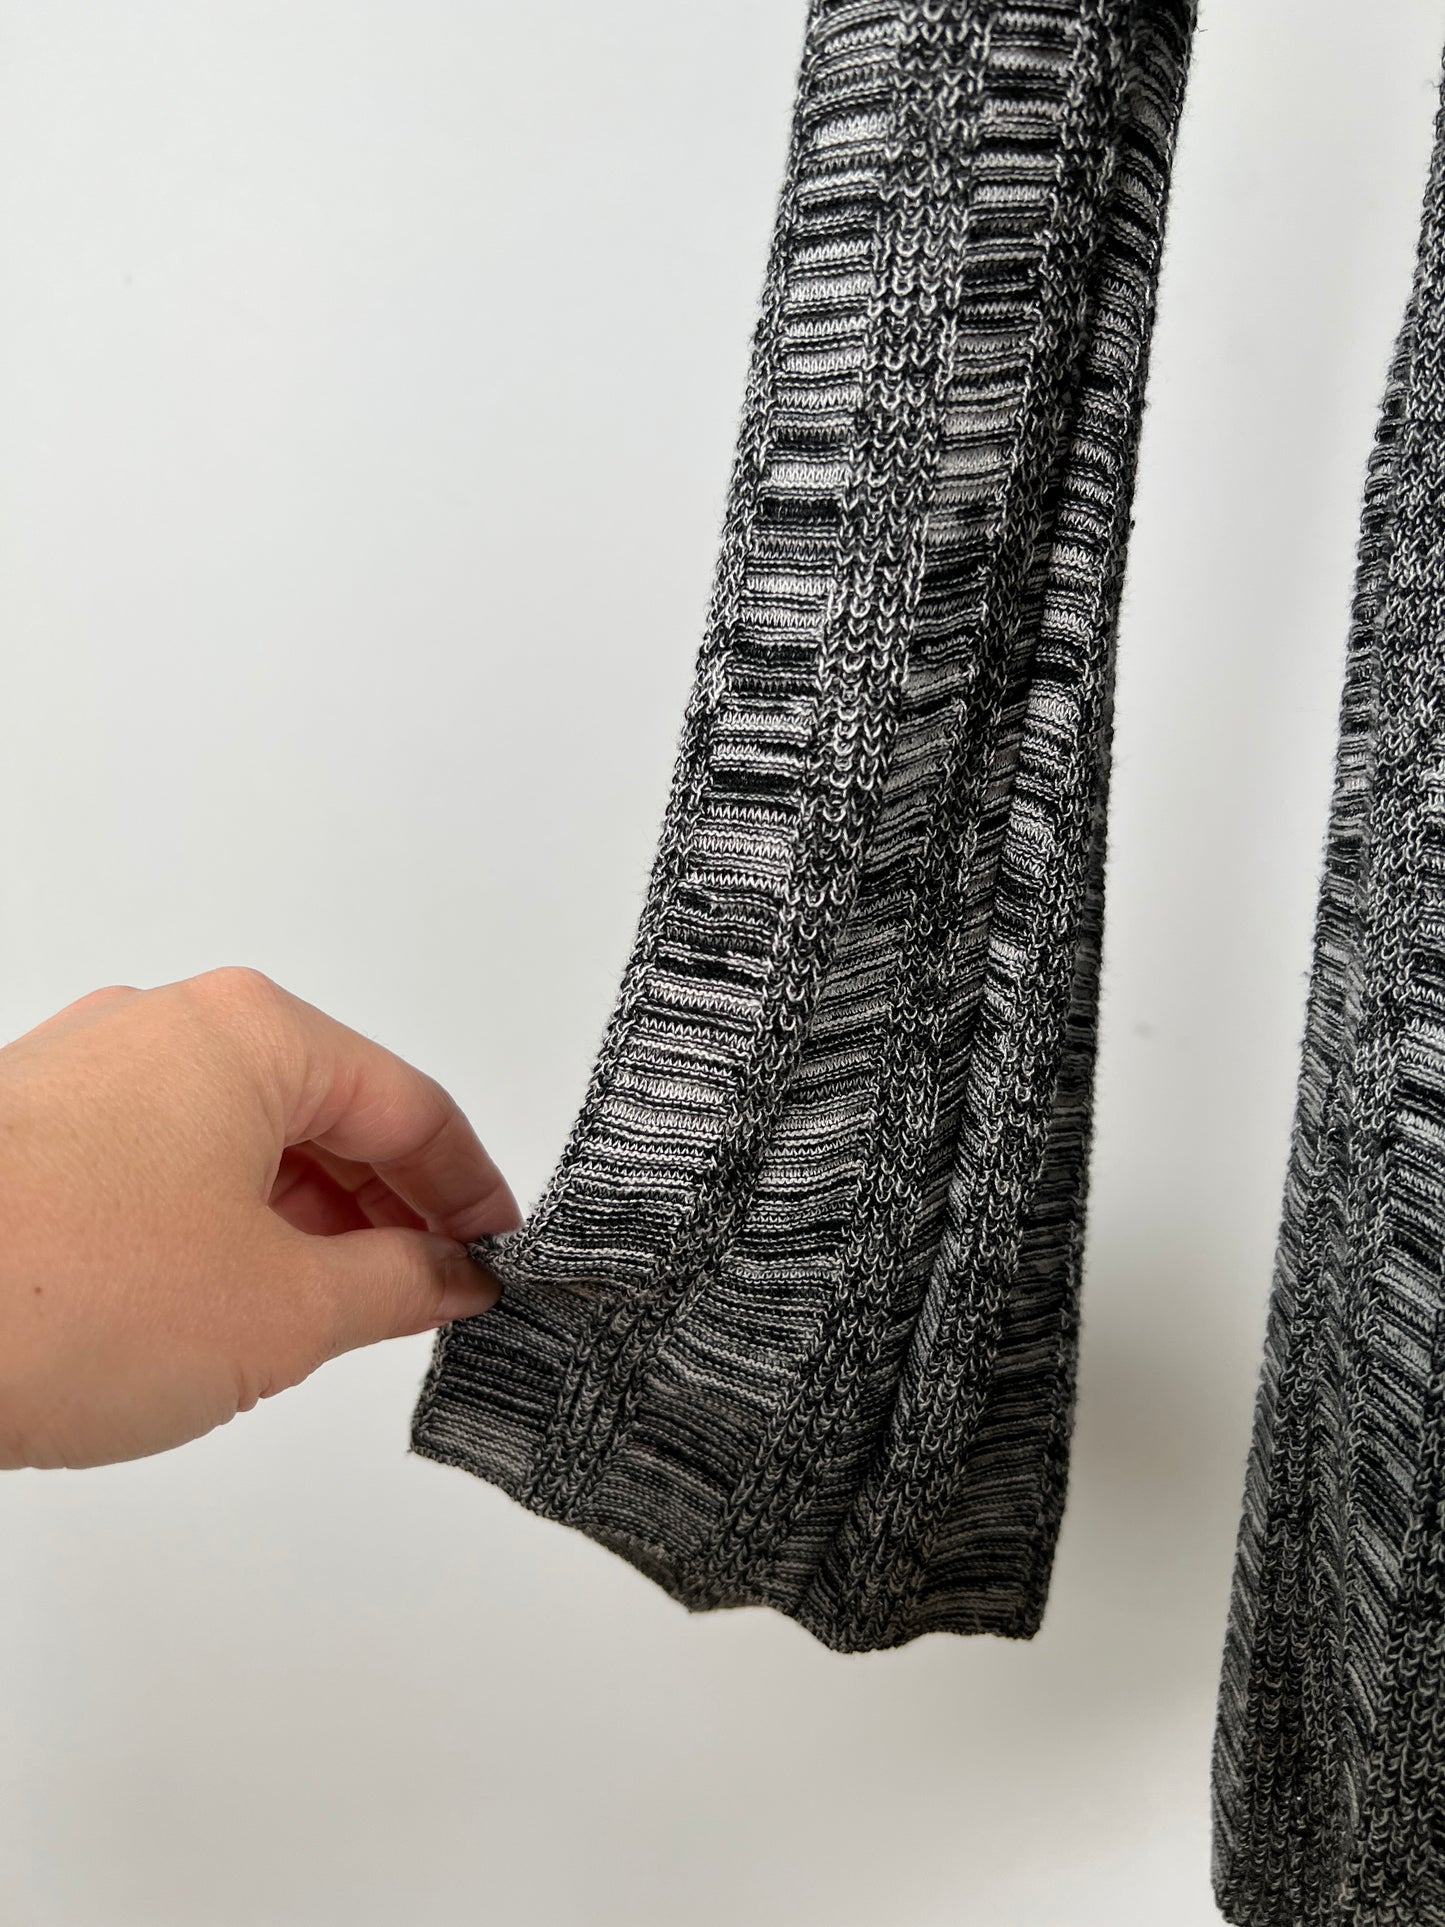 Veste en tricot de soie et lin chiné noir et blanc (S)